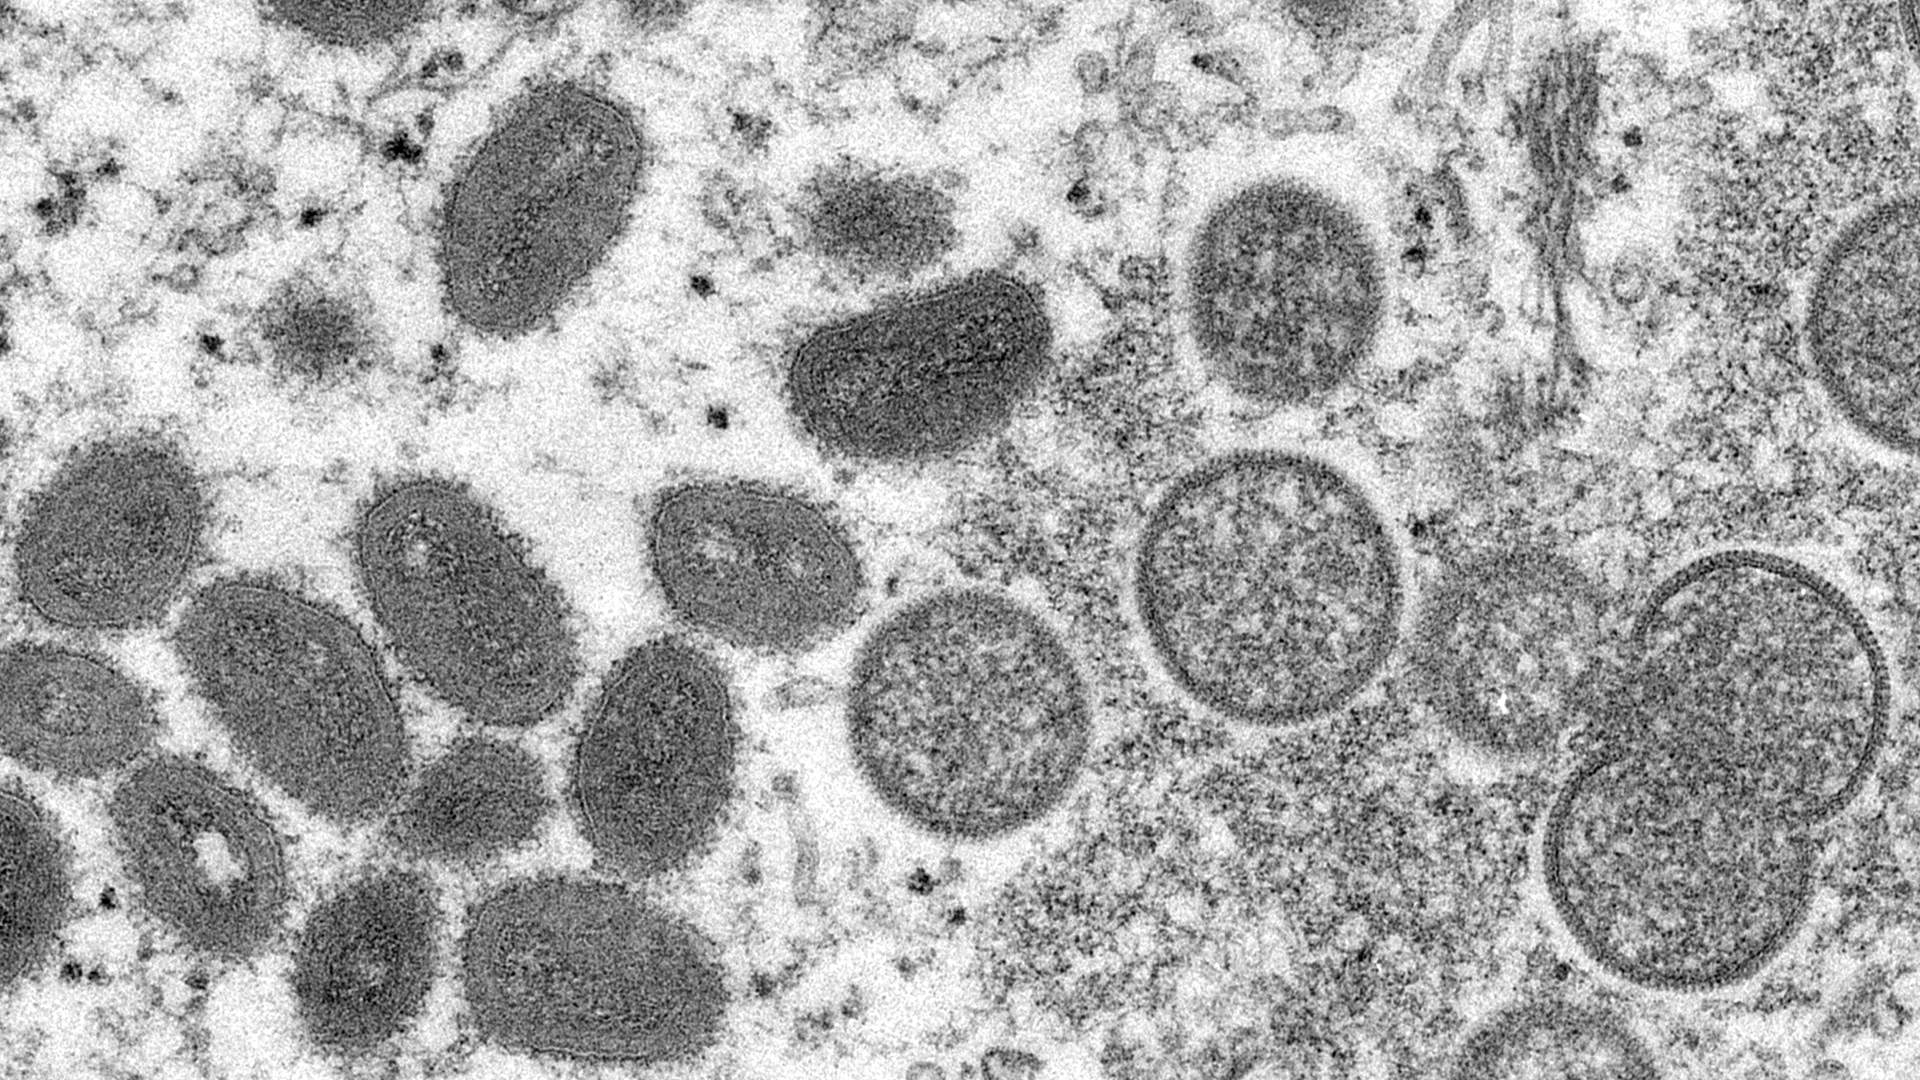 Die elektronenmikroskopische Aufnahme aus dem Jahr 2003, die von den Centers for Disease Control and Prevention zur Verfügung gestellt wurde, zeigt reife, ovale Affenpockenviren (l) und kugelförmige unreife Virionen (r) | dpa